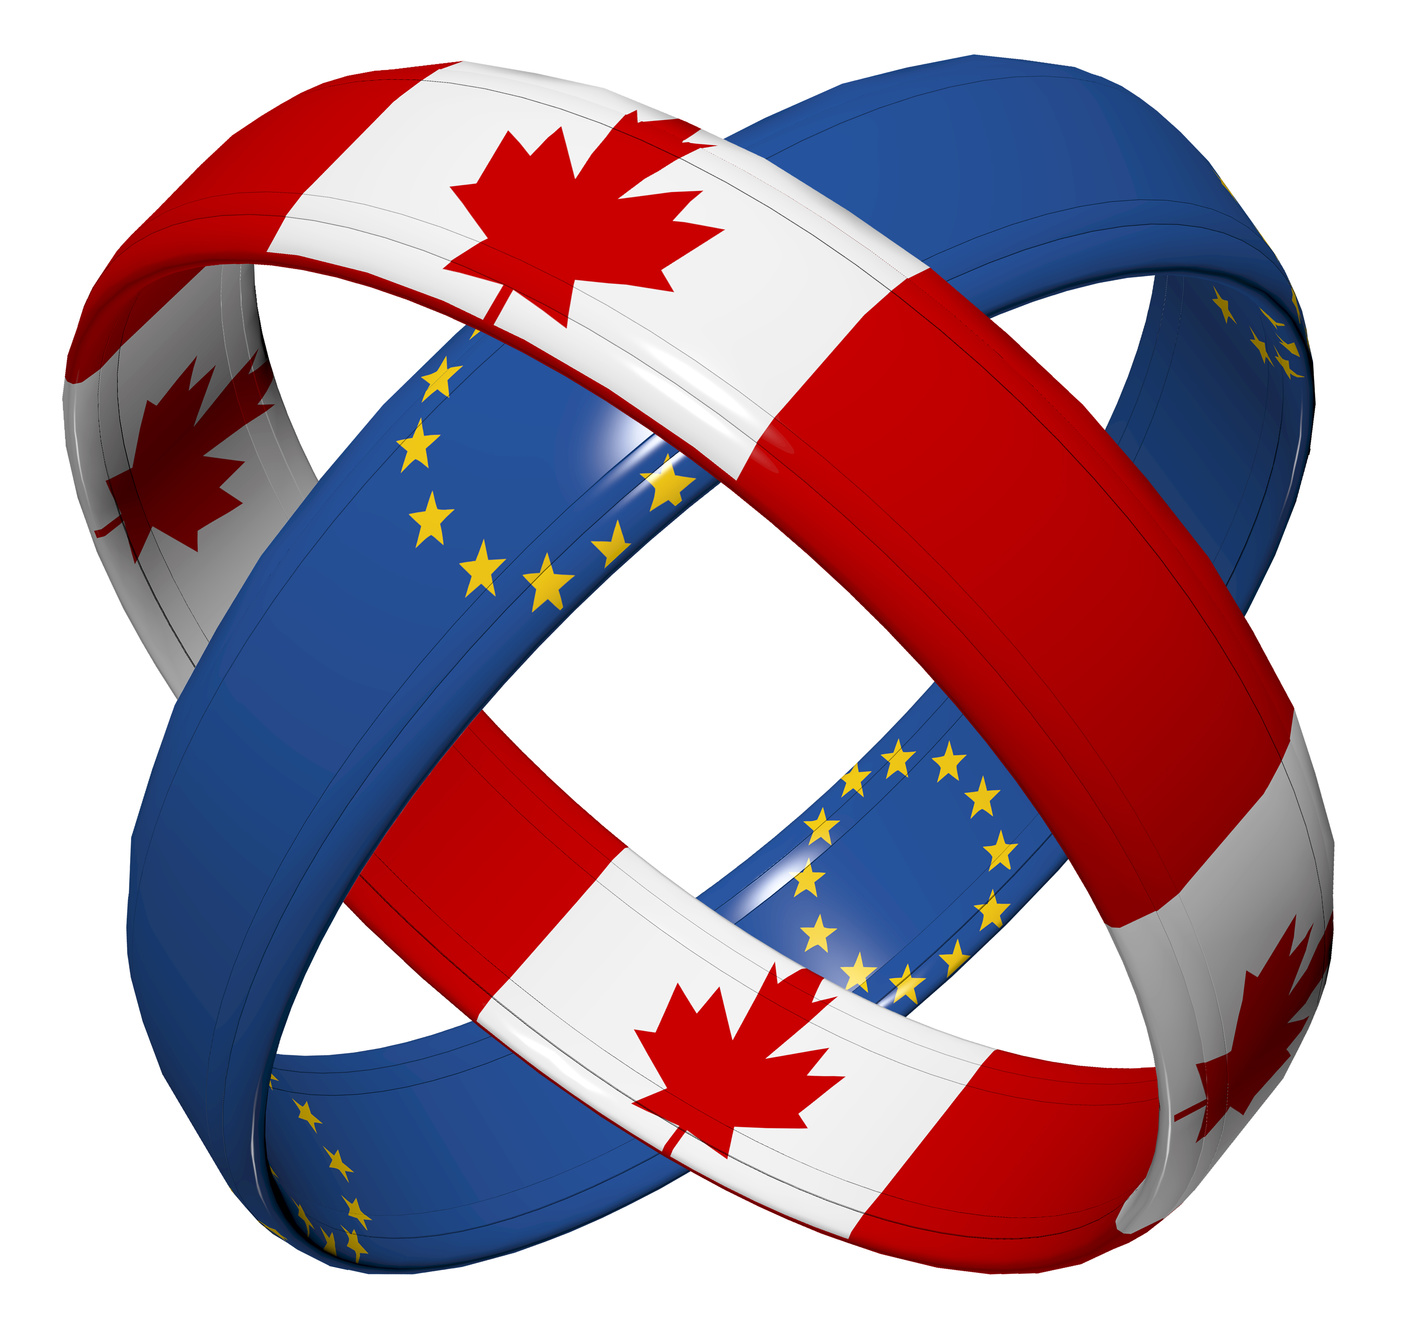 CETA agreement symbol